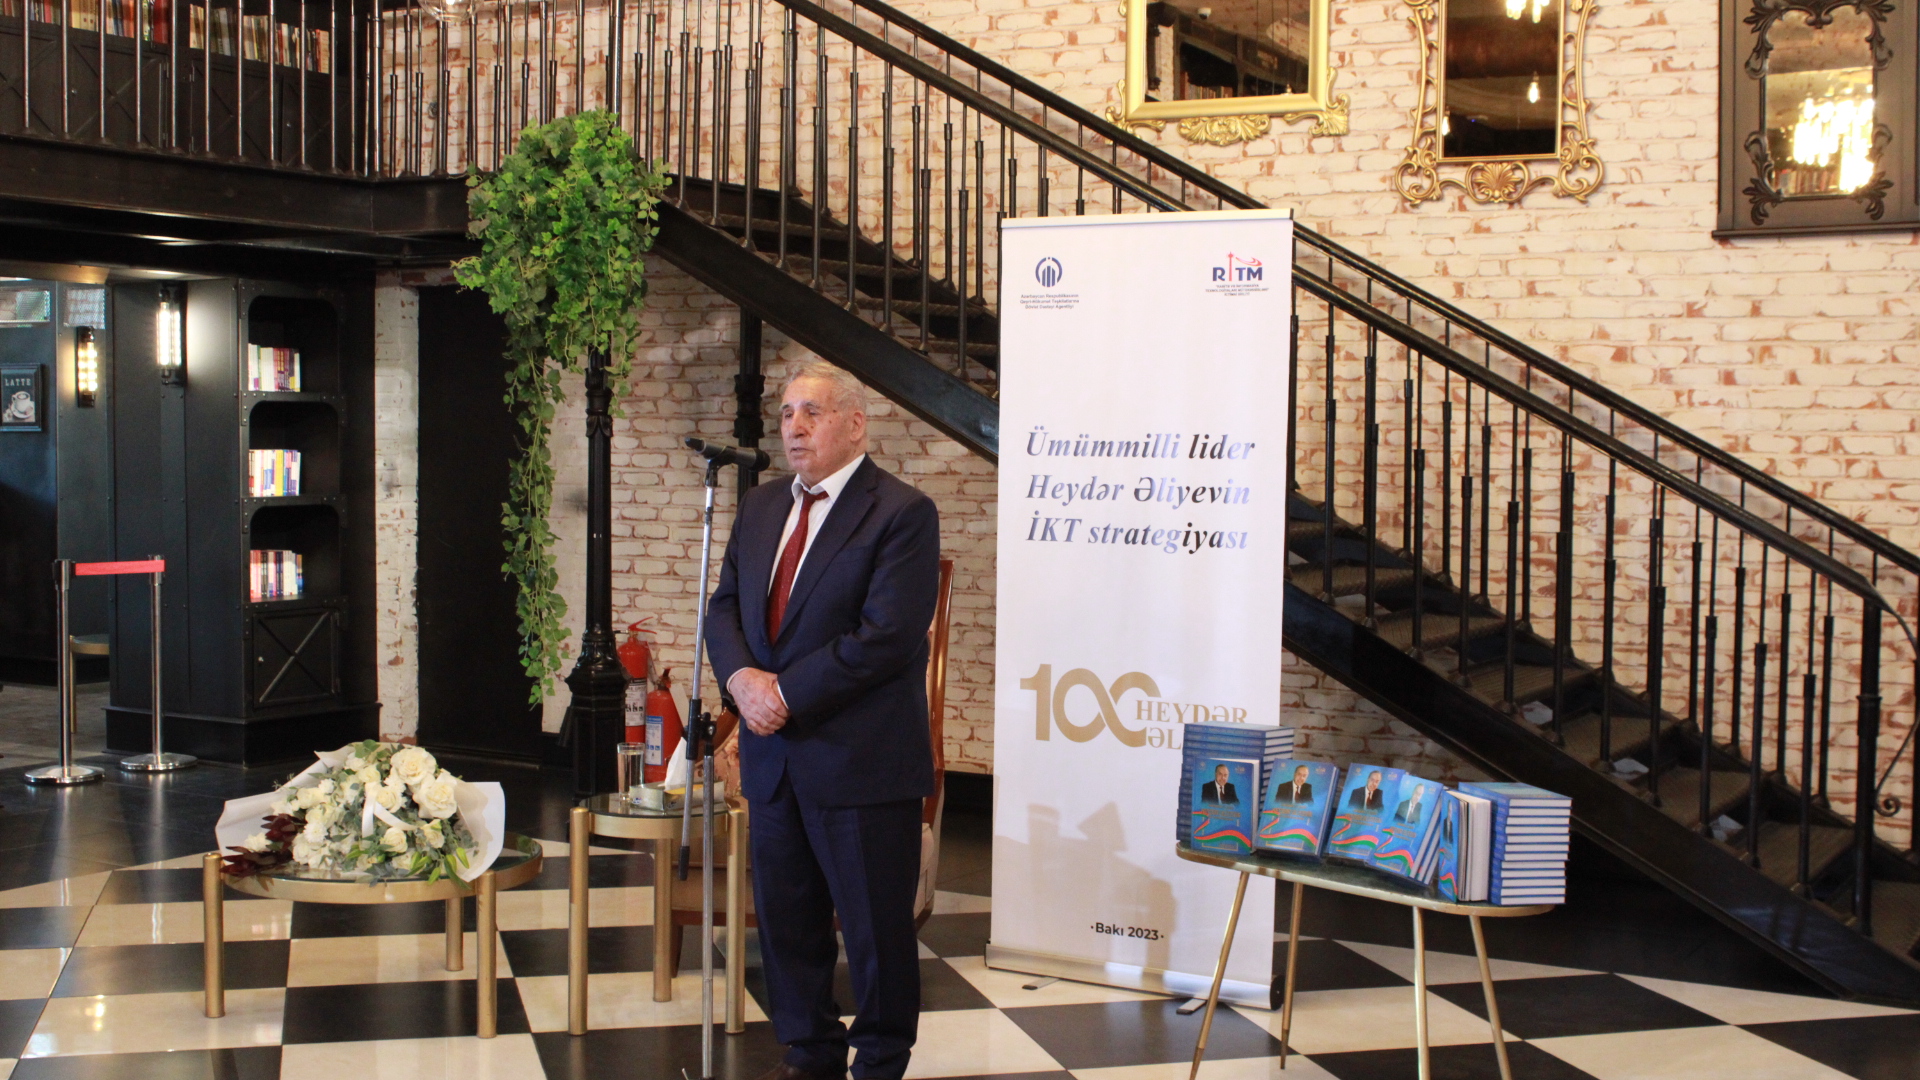 Состоялась церемония презентации книги «ИКТ-стратегия общенационального лидера Гейдара Алиева»